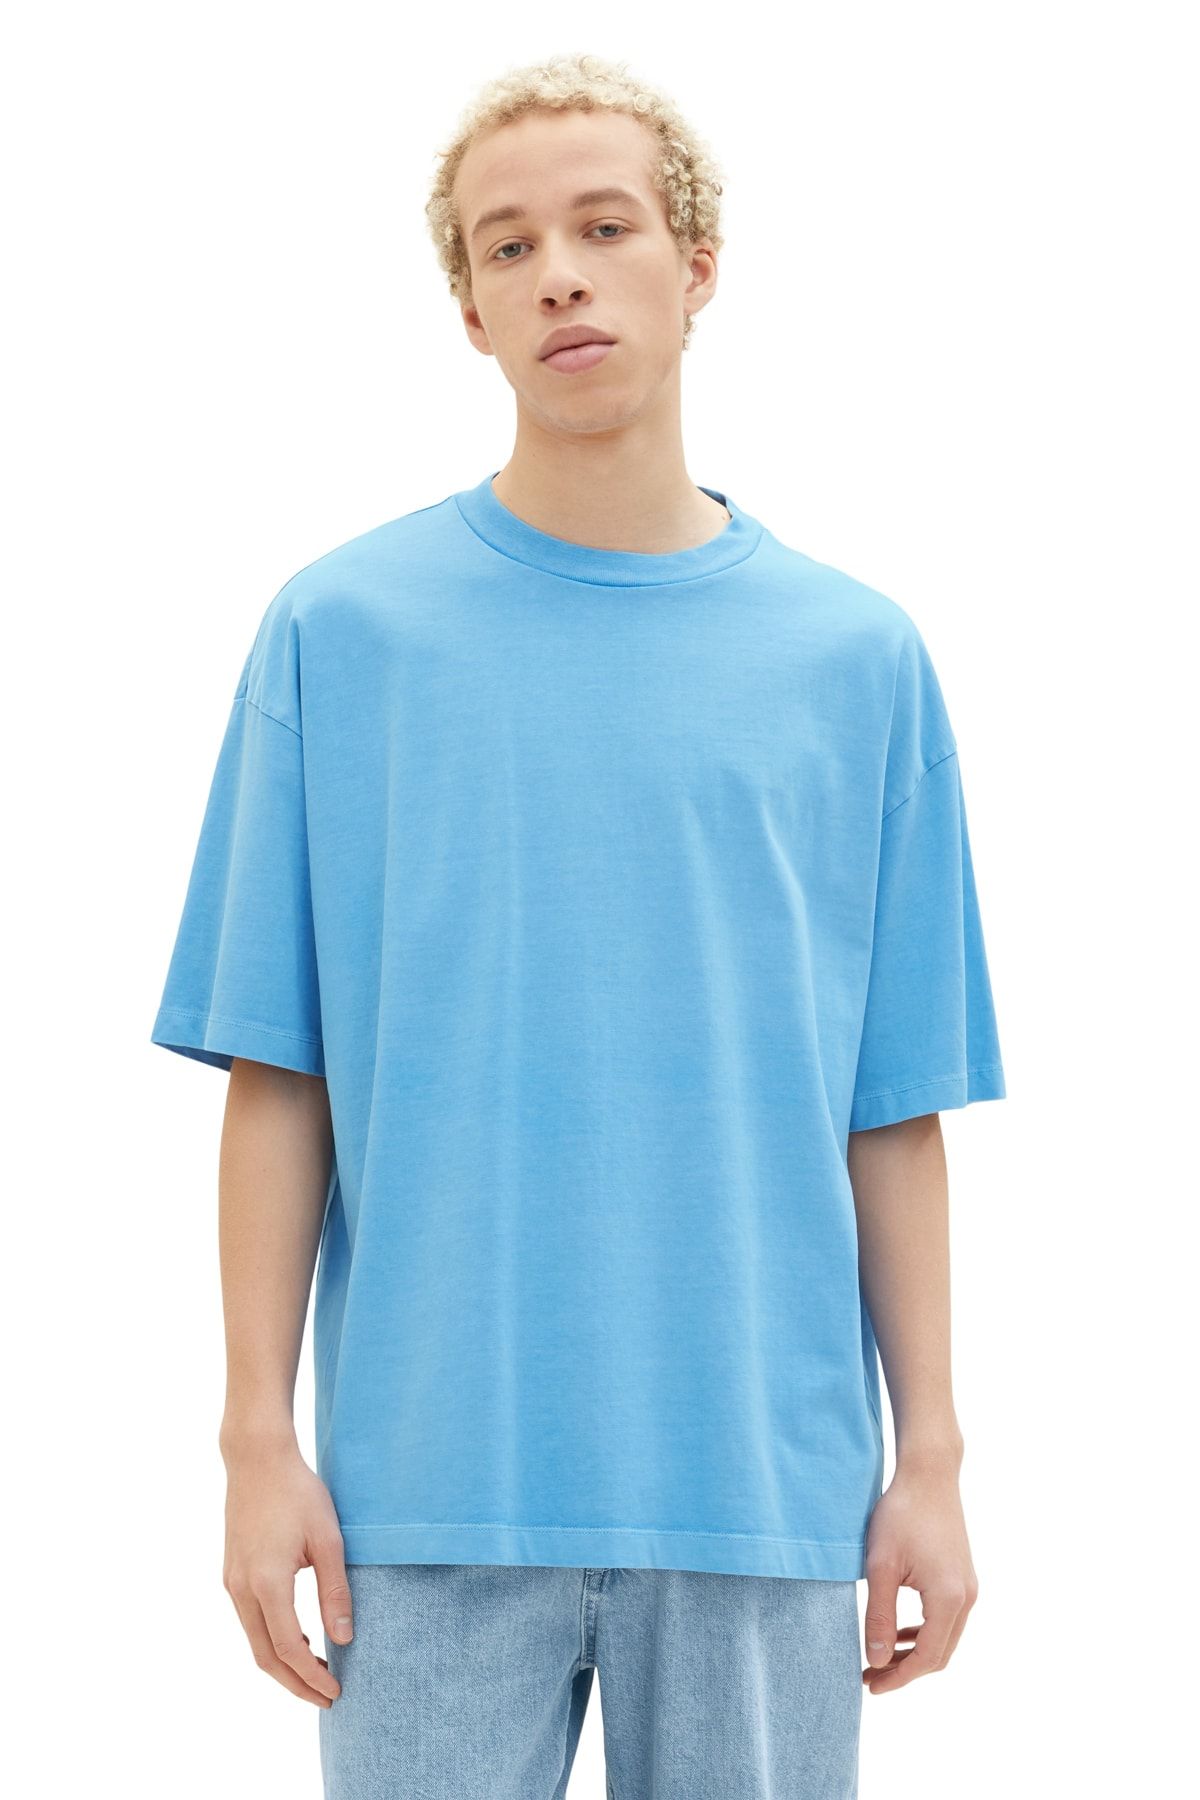 rainy - Tom T-Shirt Denim Trendyol Tailor sky blue Men\'s